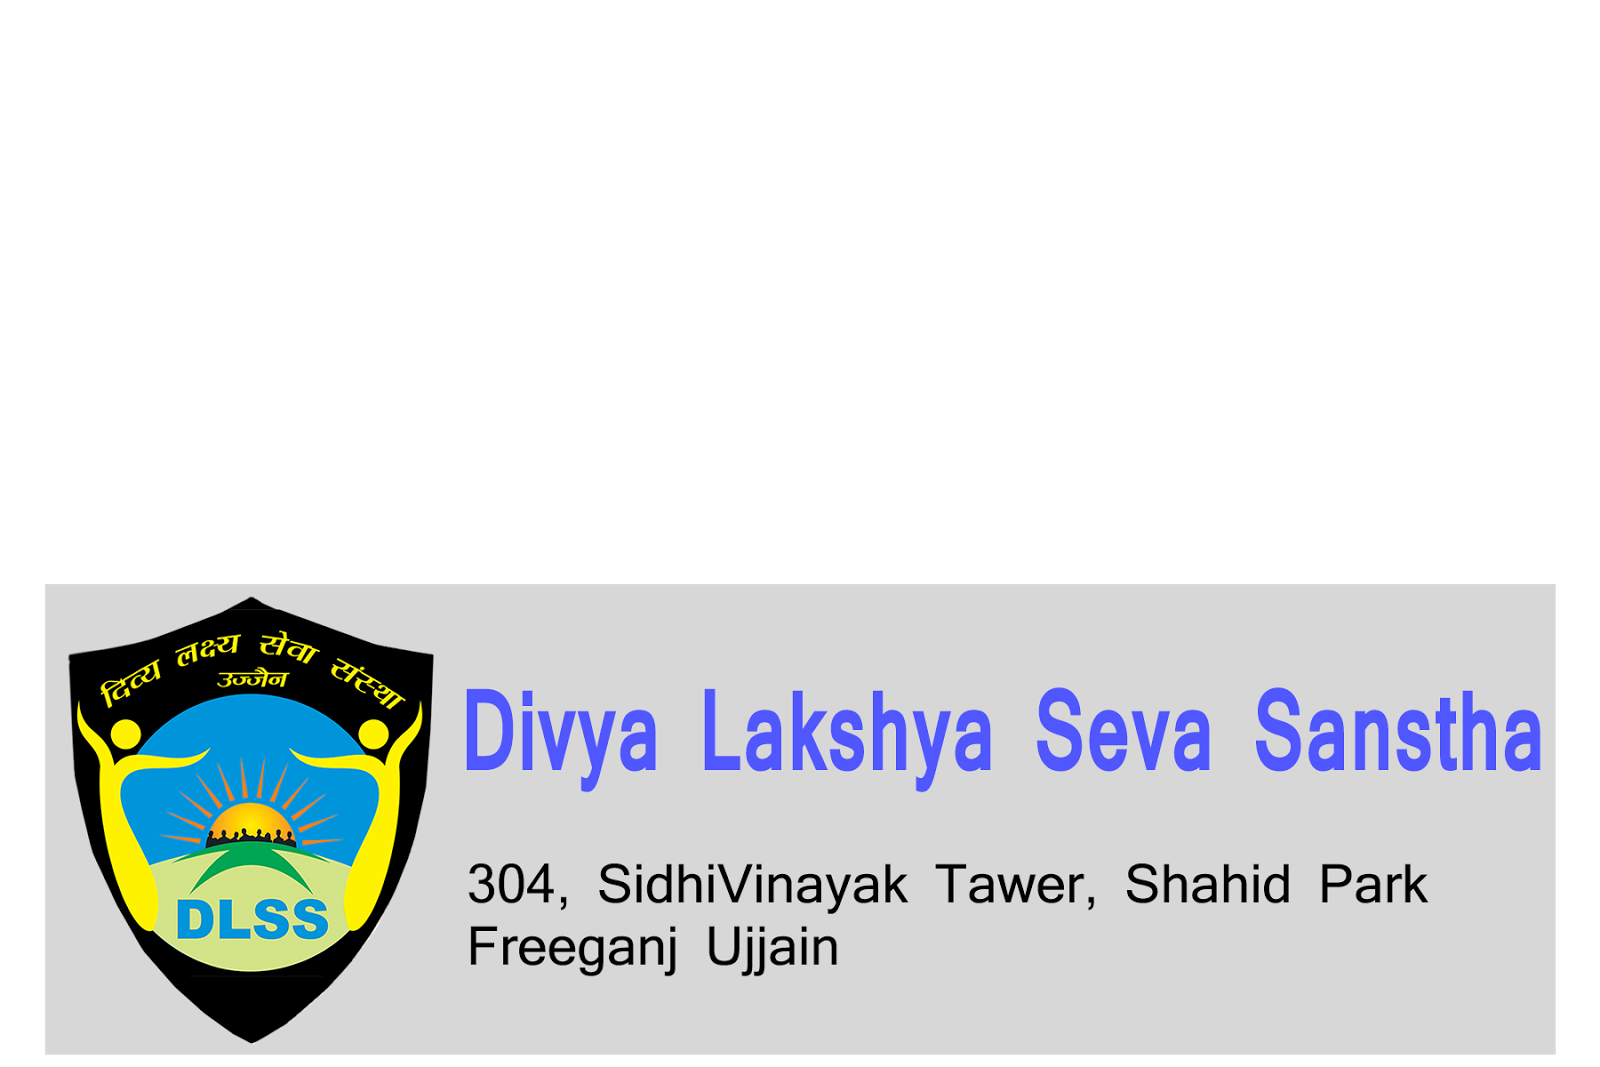 Divya Lakshya Seva Sanstha